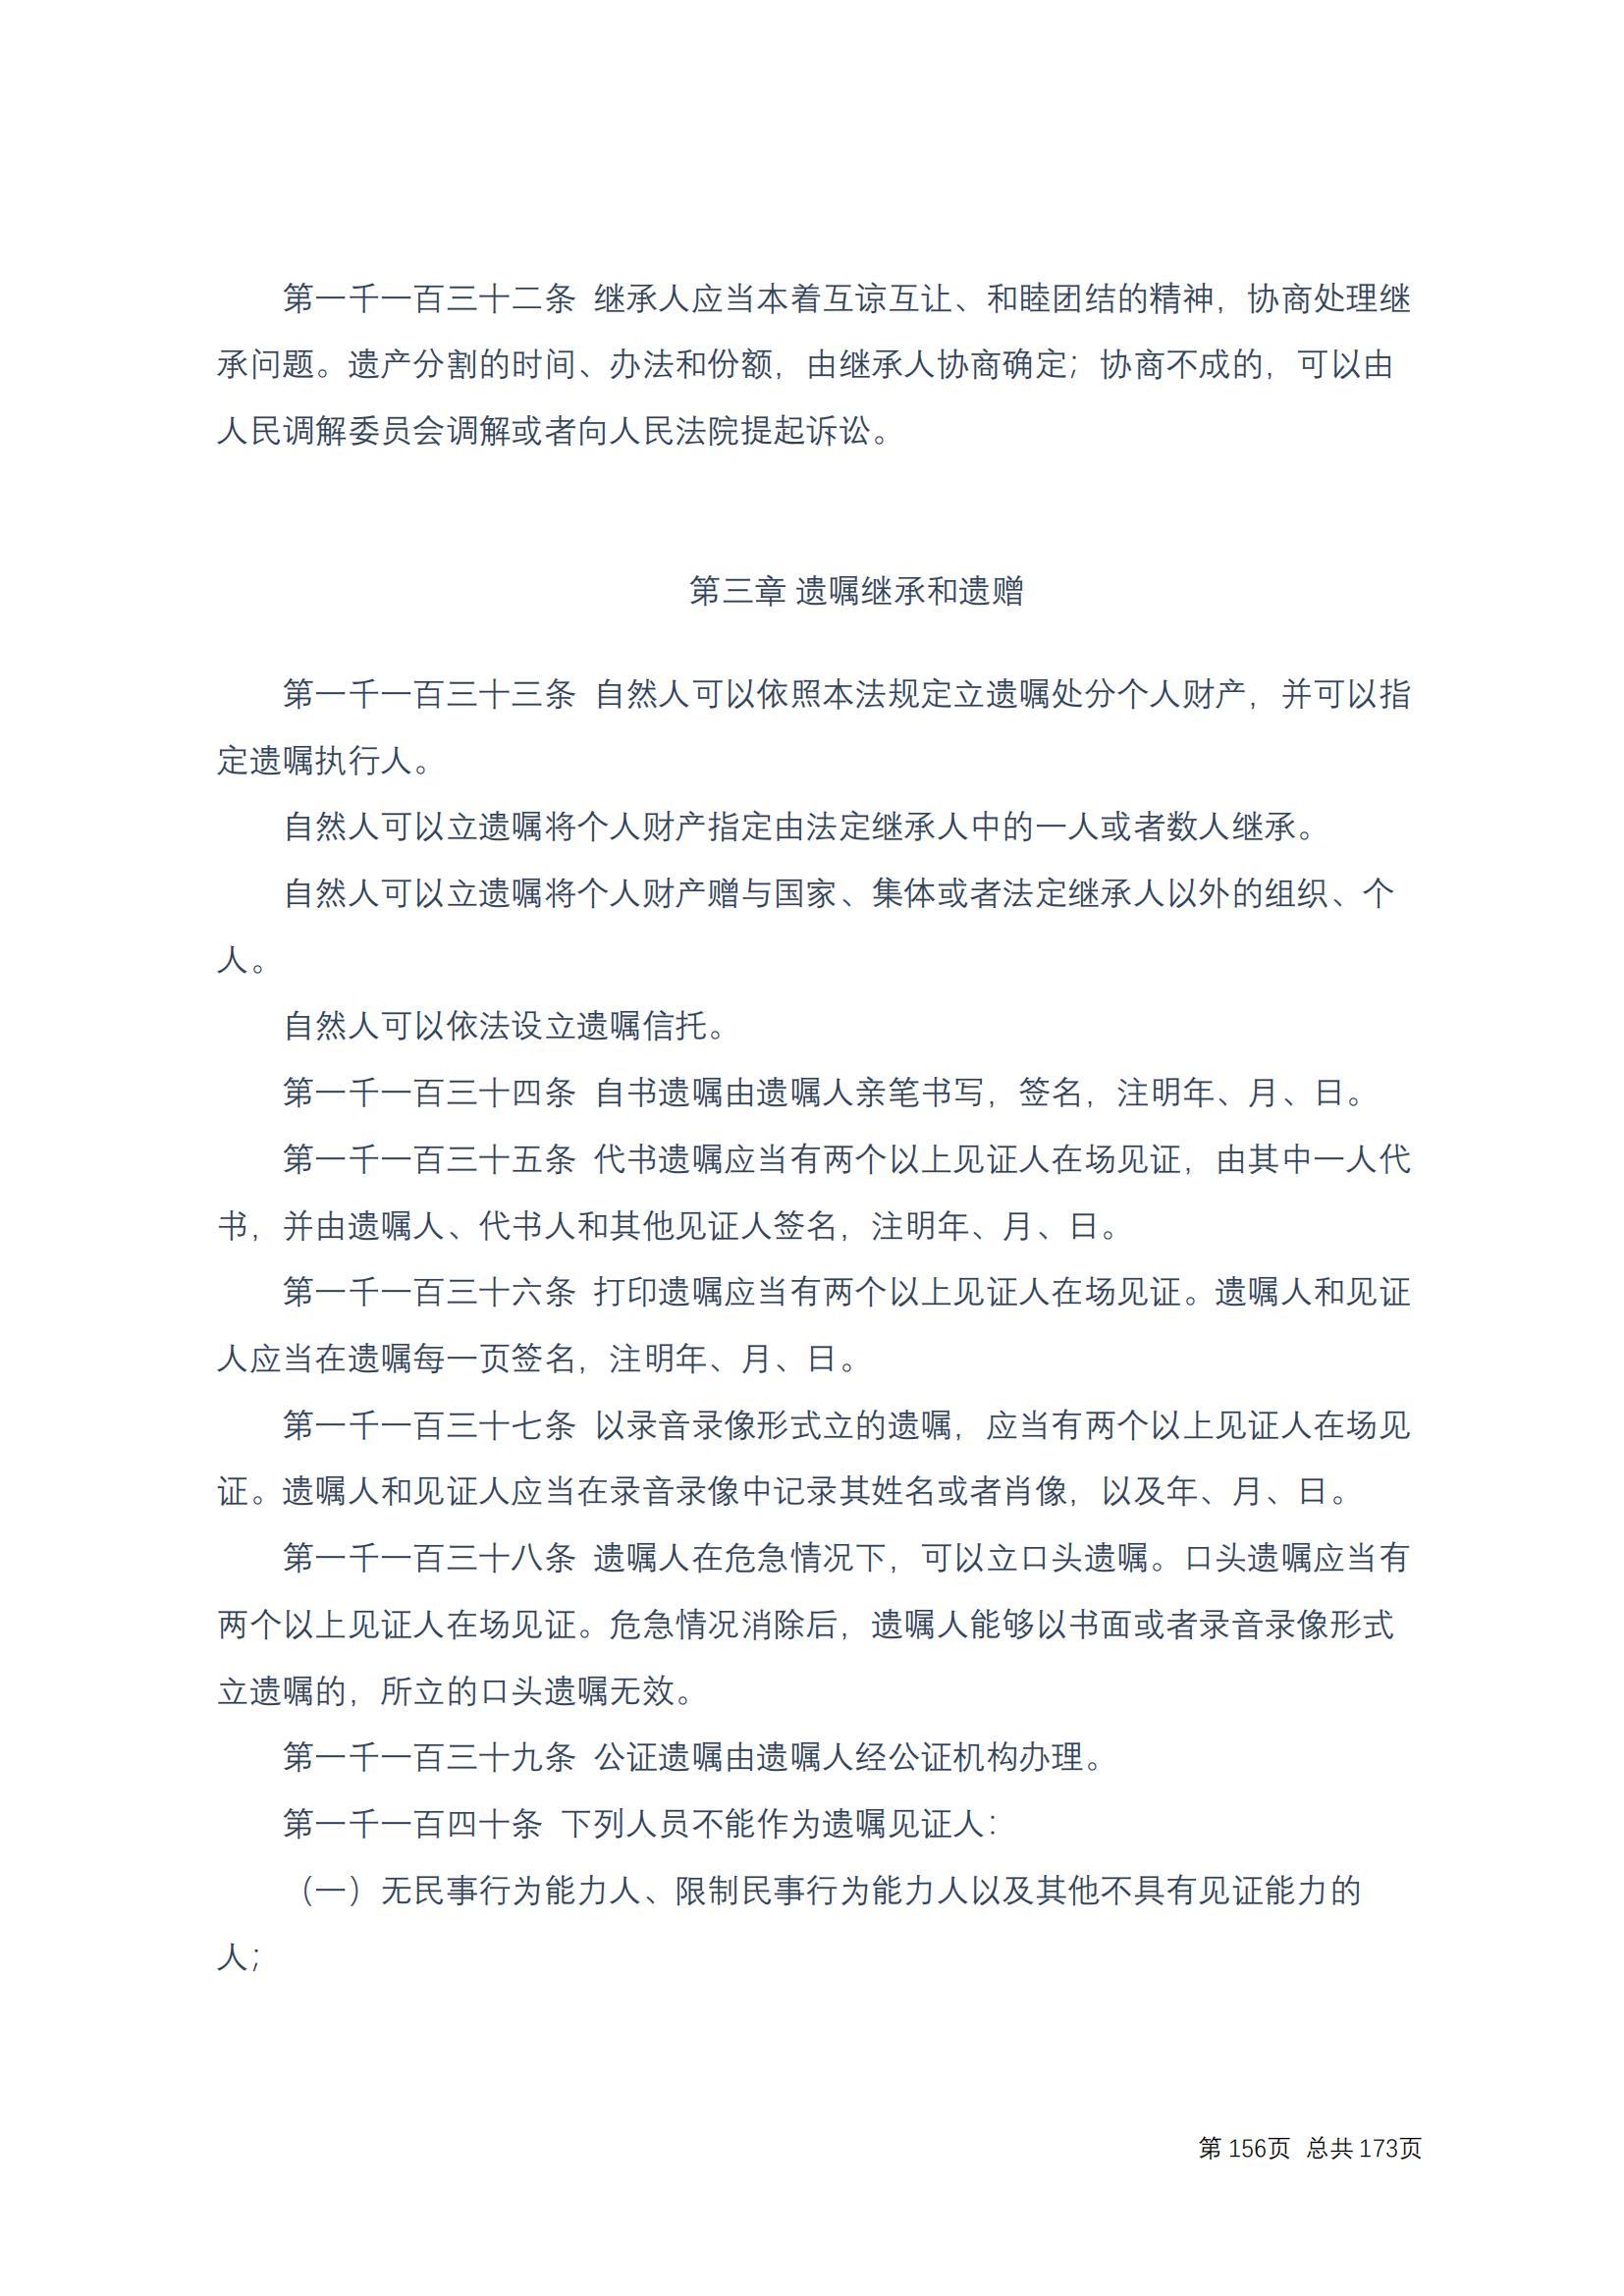 中华人民共和国民法典 修改过_155